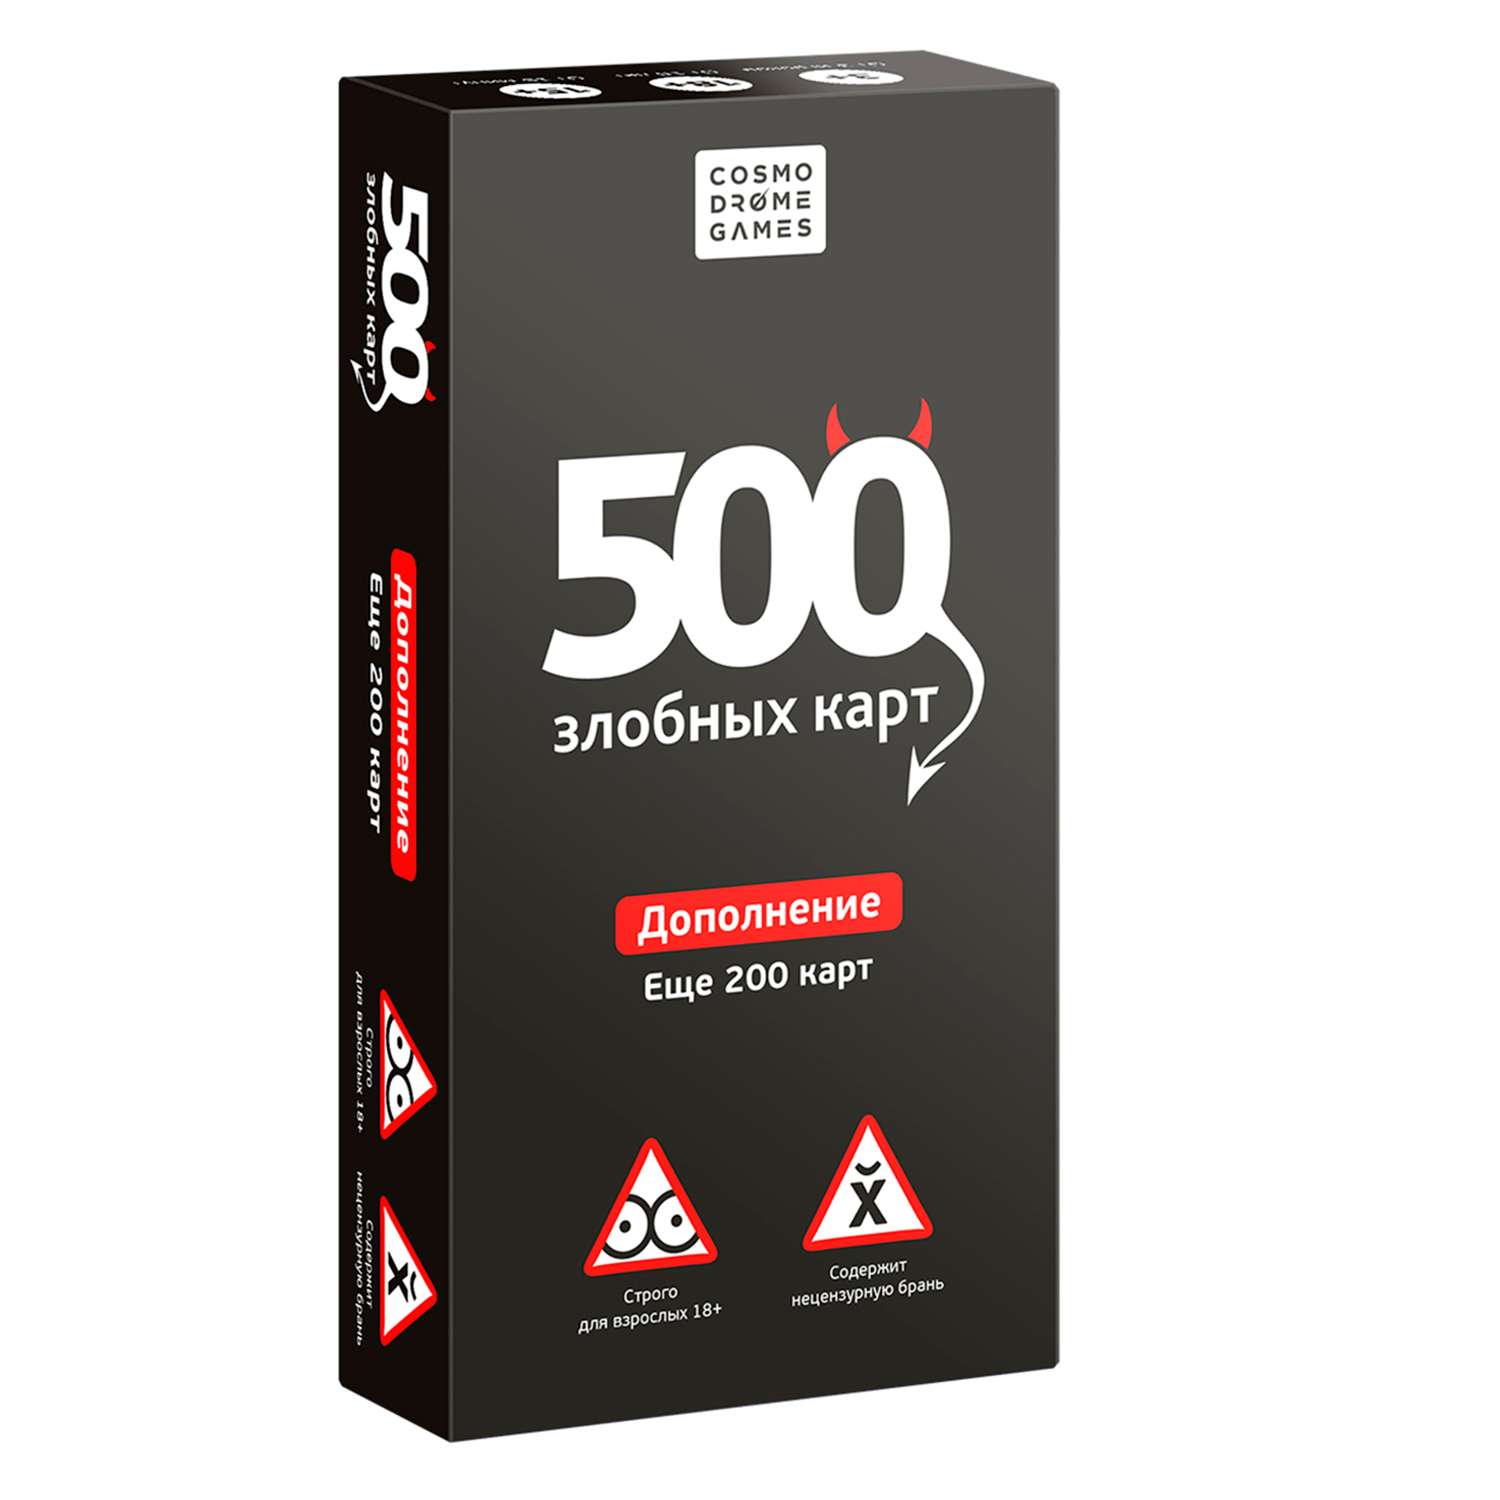 Набор дополнительных карт Cosmodrome Games 500злобных карт Чёрный 52010 - фото 1